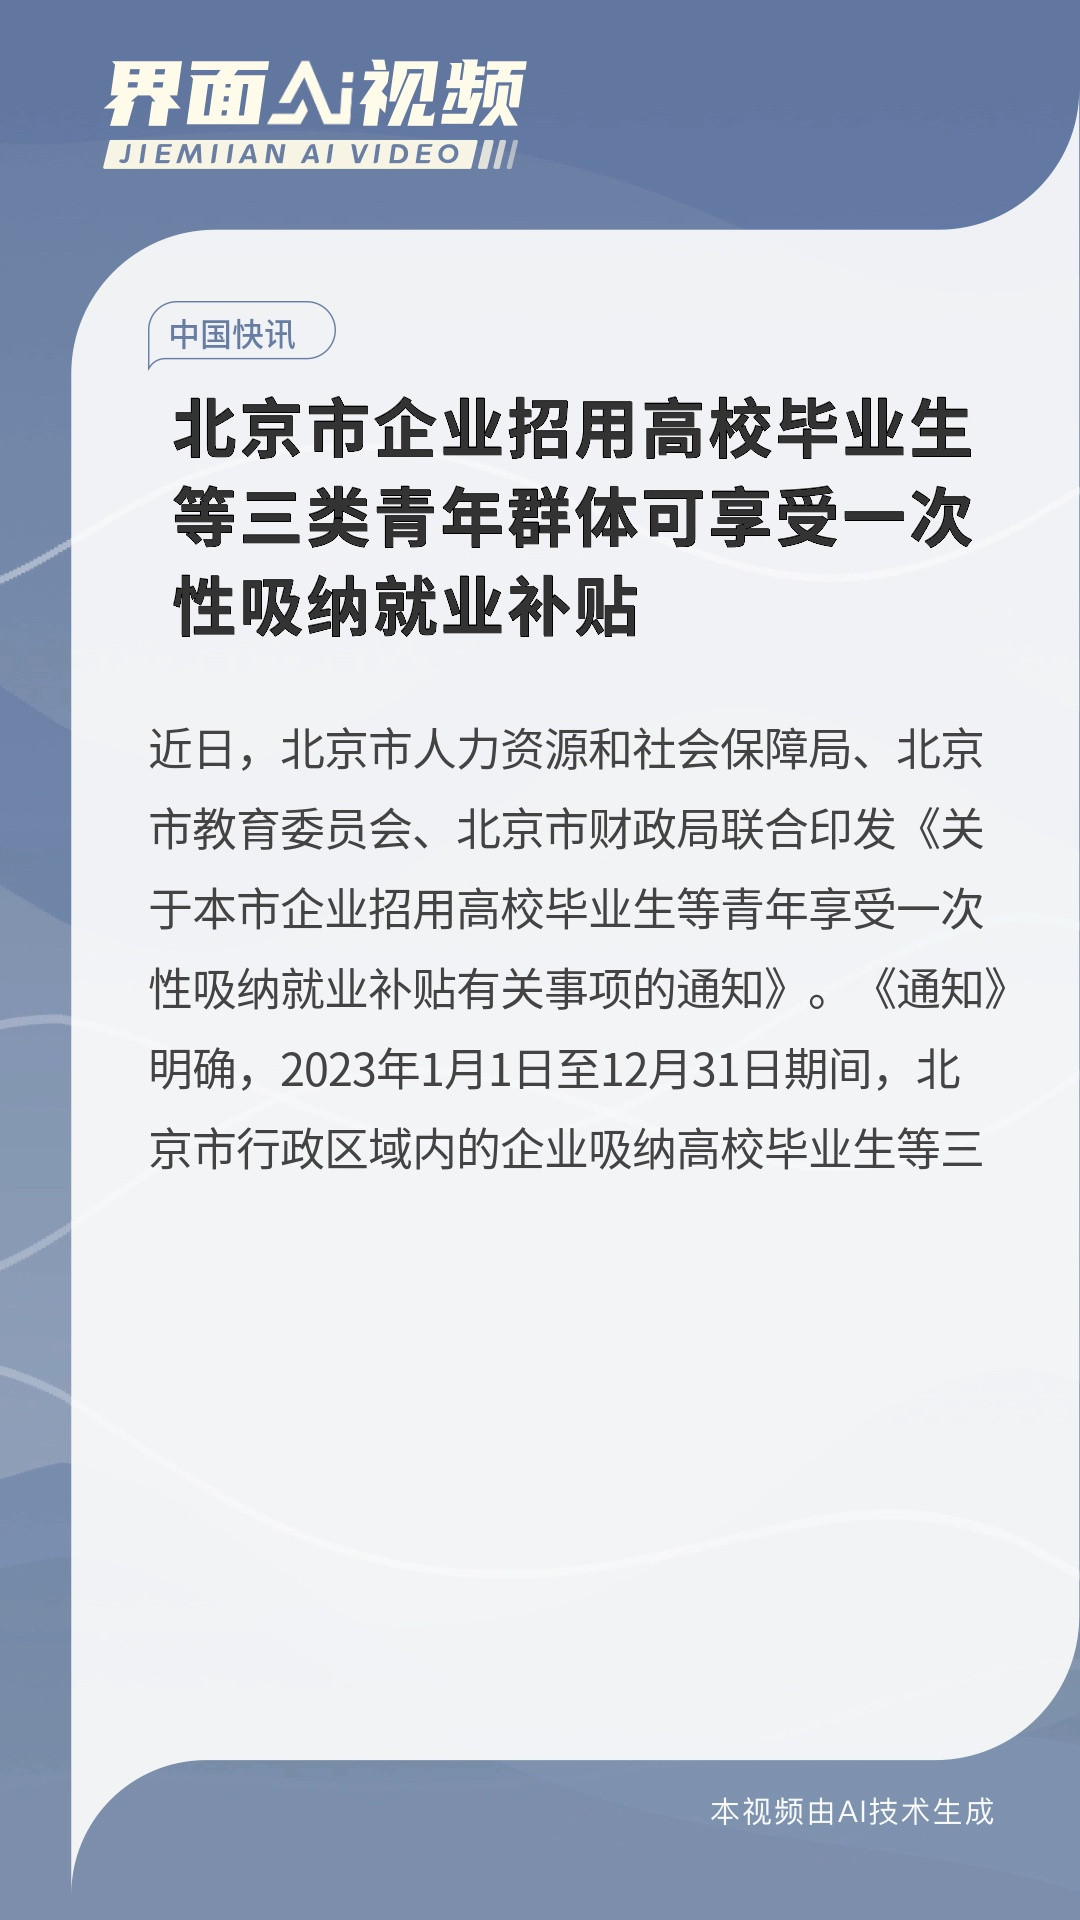 北京市企业招用高校毕业生等三类青年群体可享受一次性吸纳就业补贴